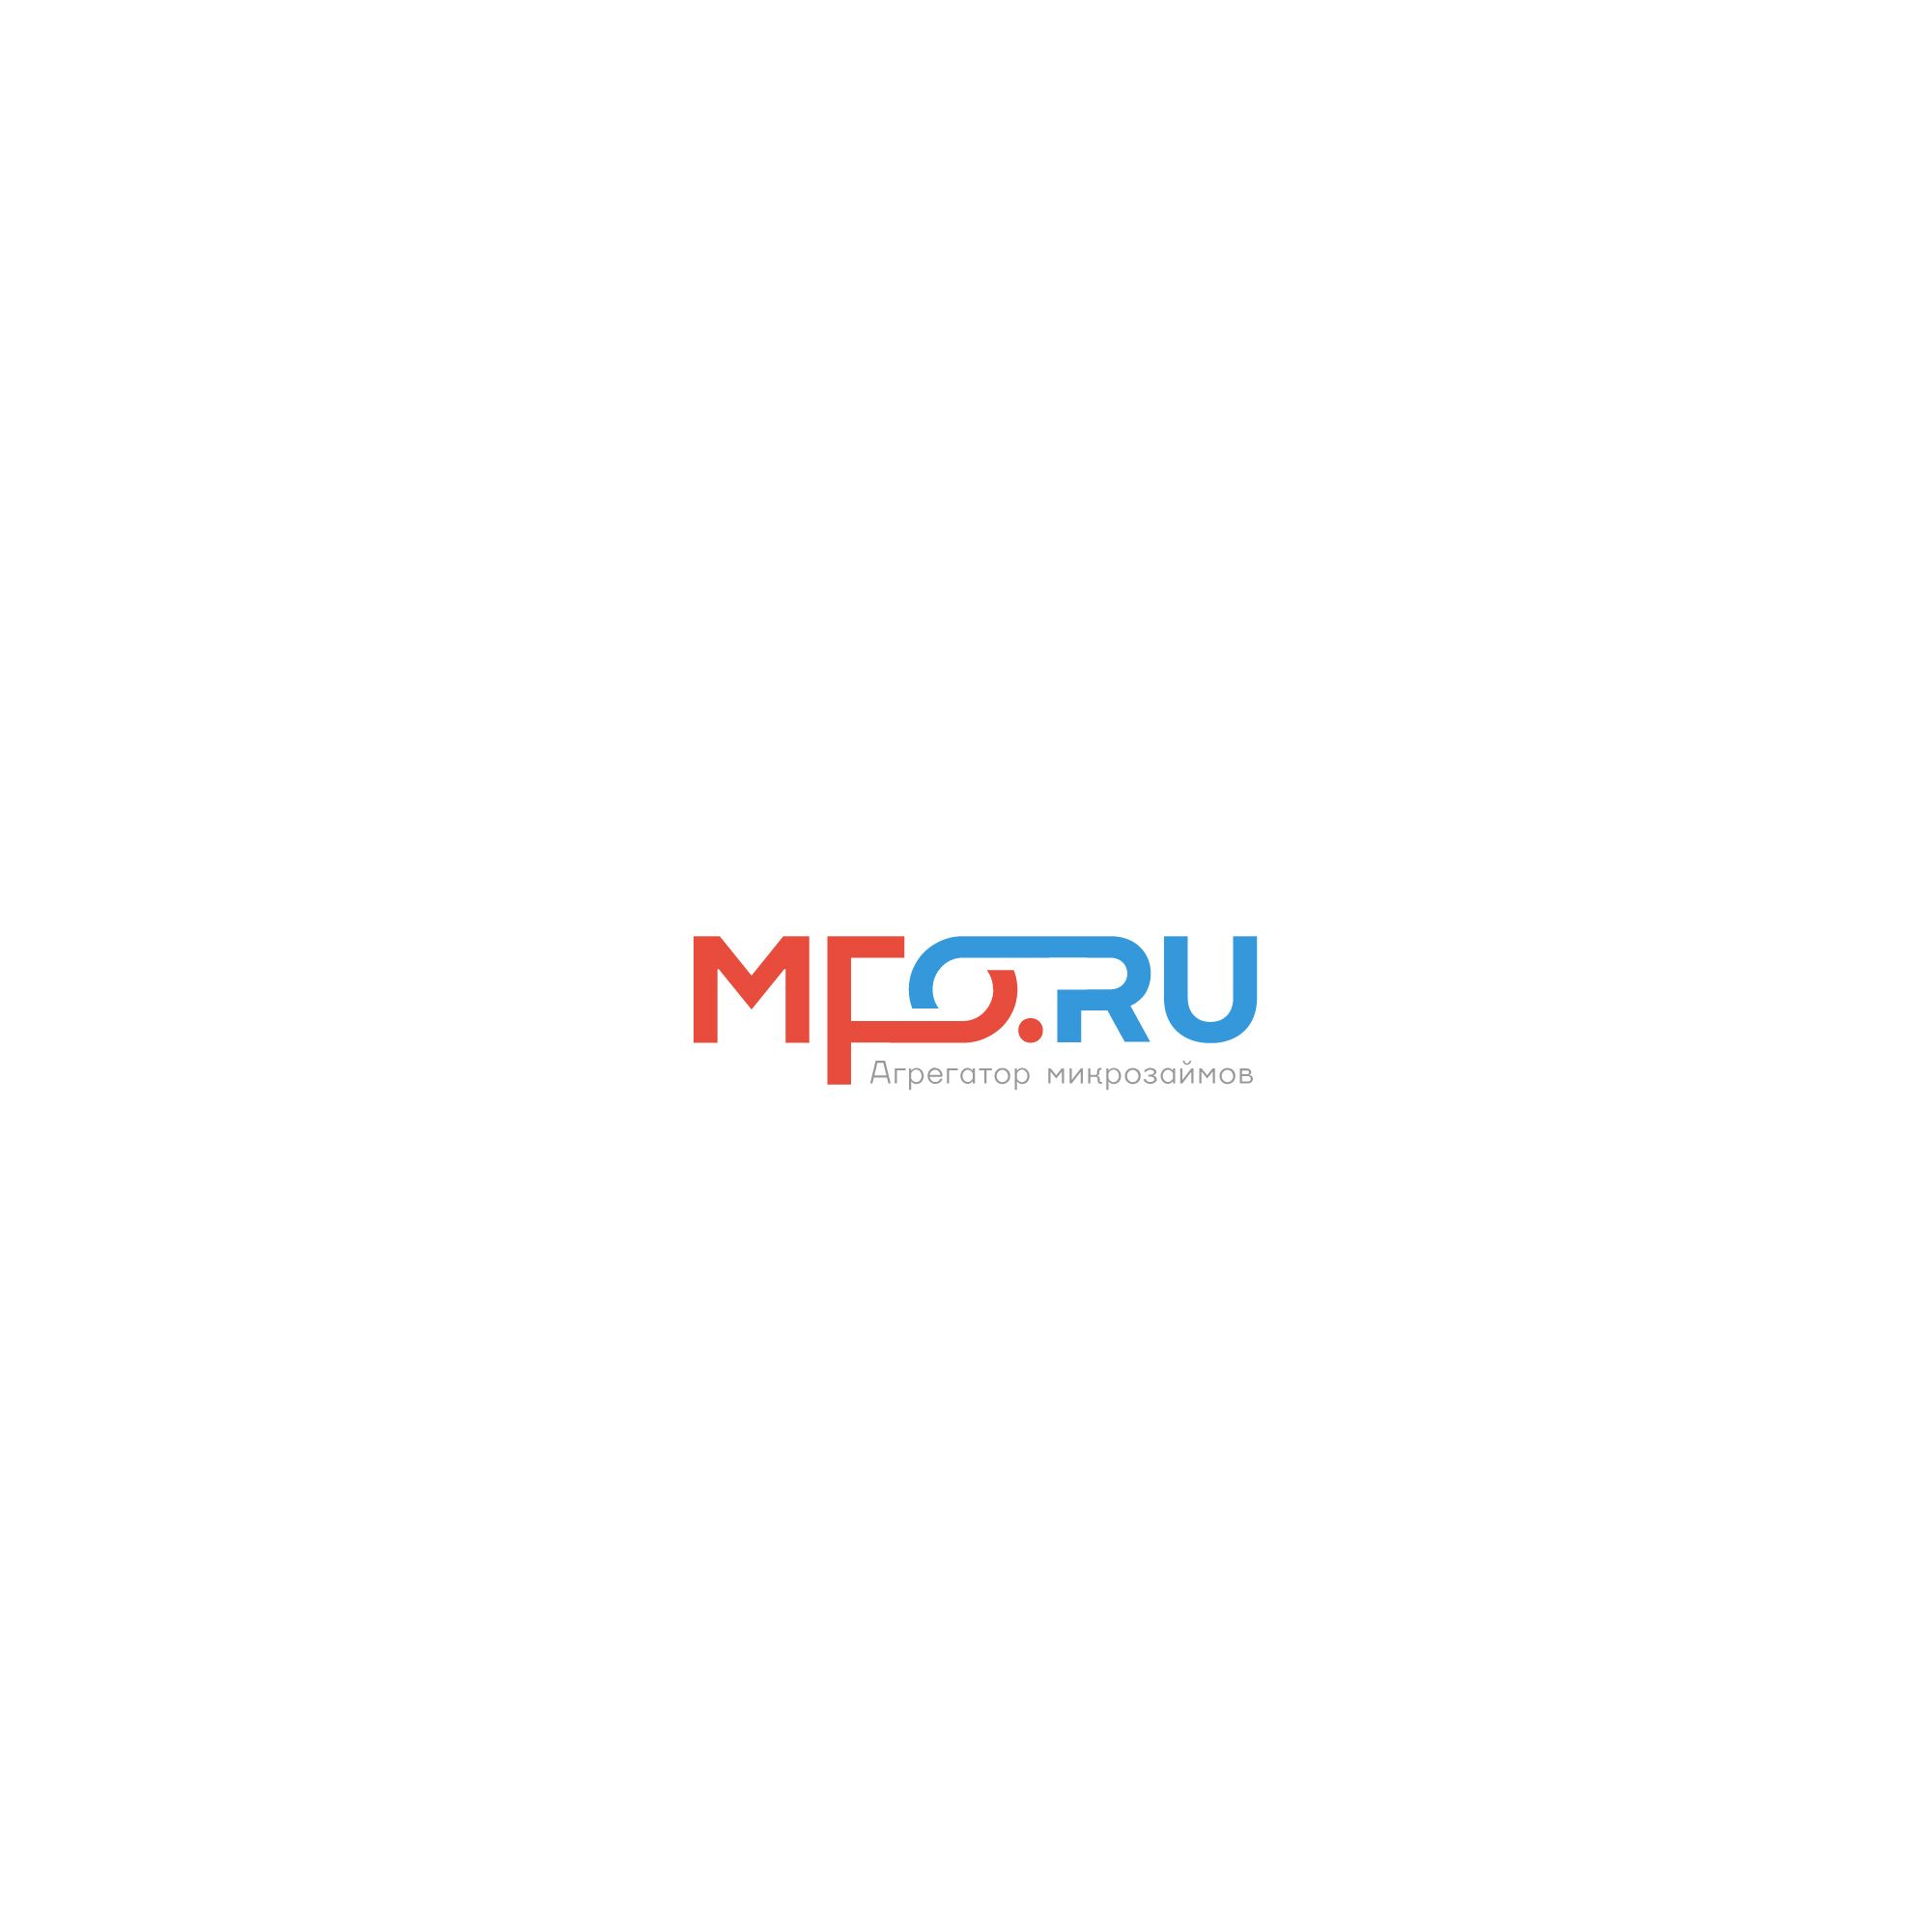 Логотип для MFO.RU - дизайнер designer12345